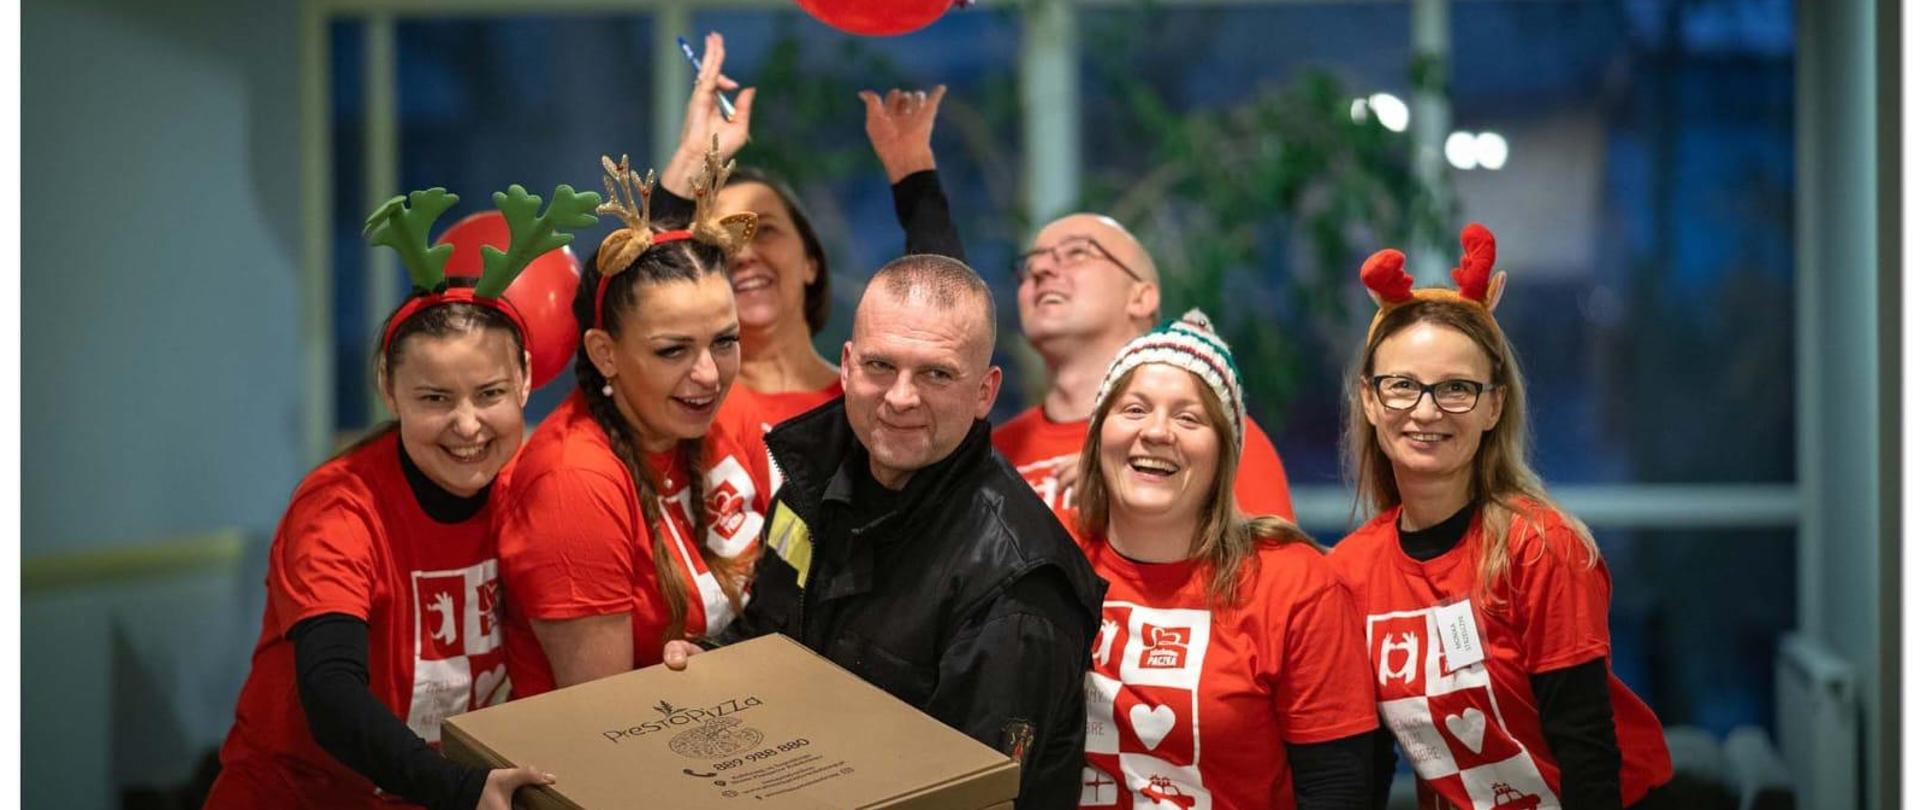 Przebrani wolontariusze w czerwonych koszulkach i strażak pozują rozbawieni do zdjęcia i trzymają kartony z pizzą